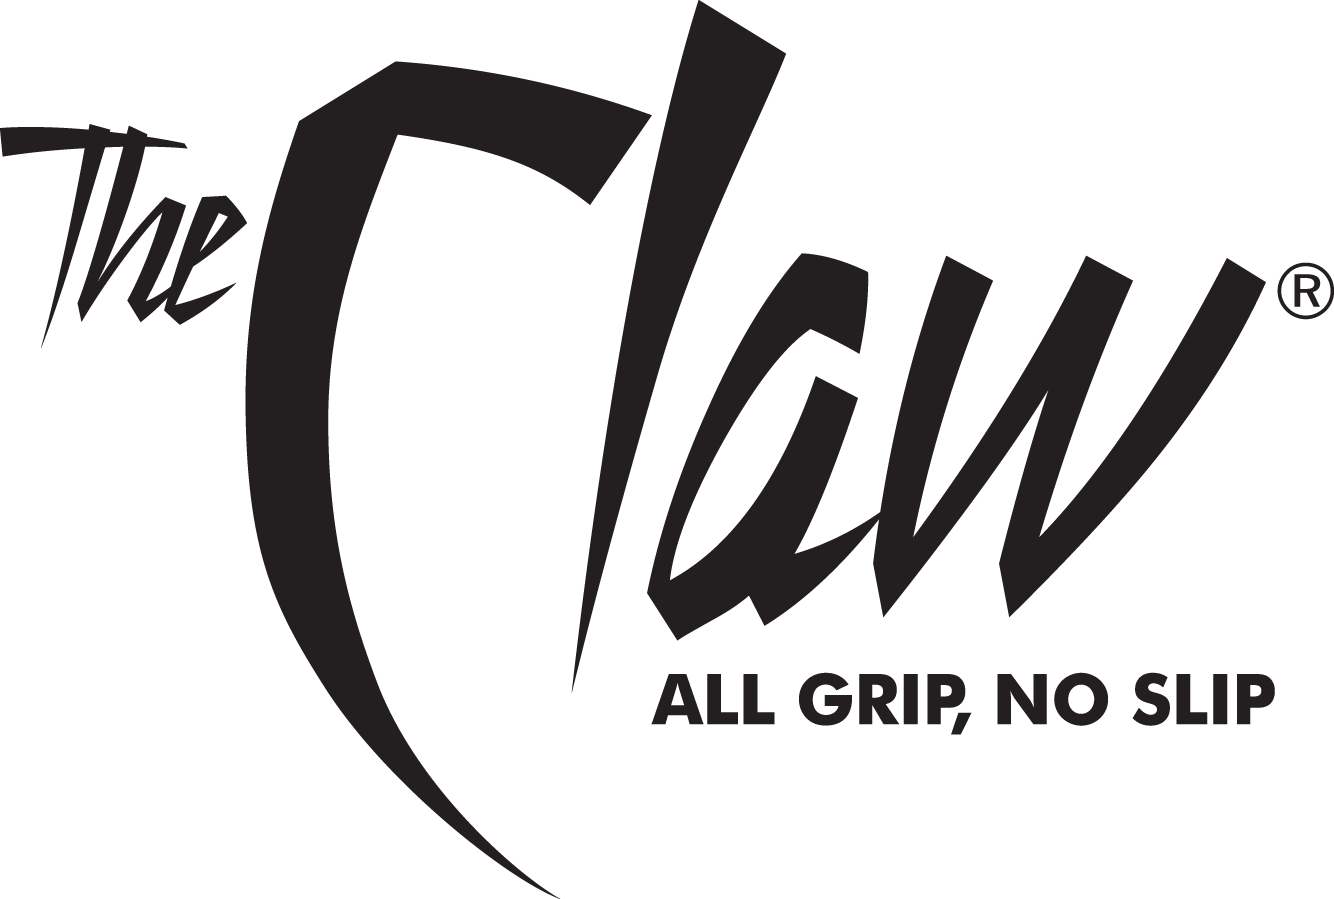 Quake The Claw - All Grip, No Slip Logo